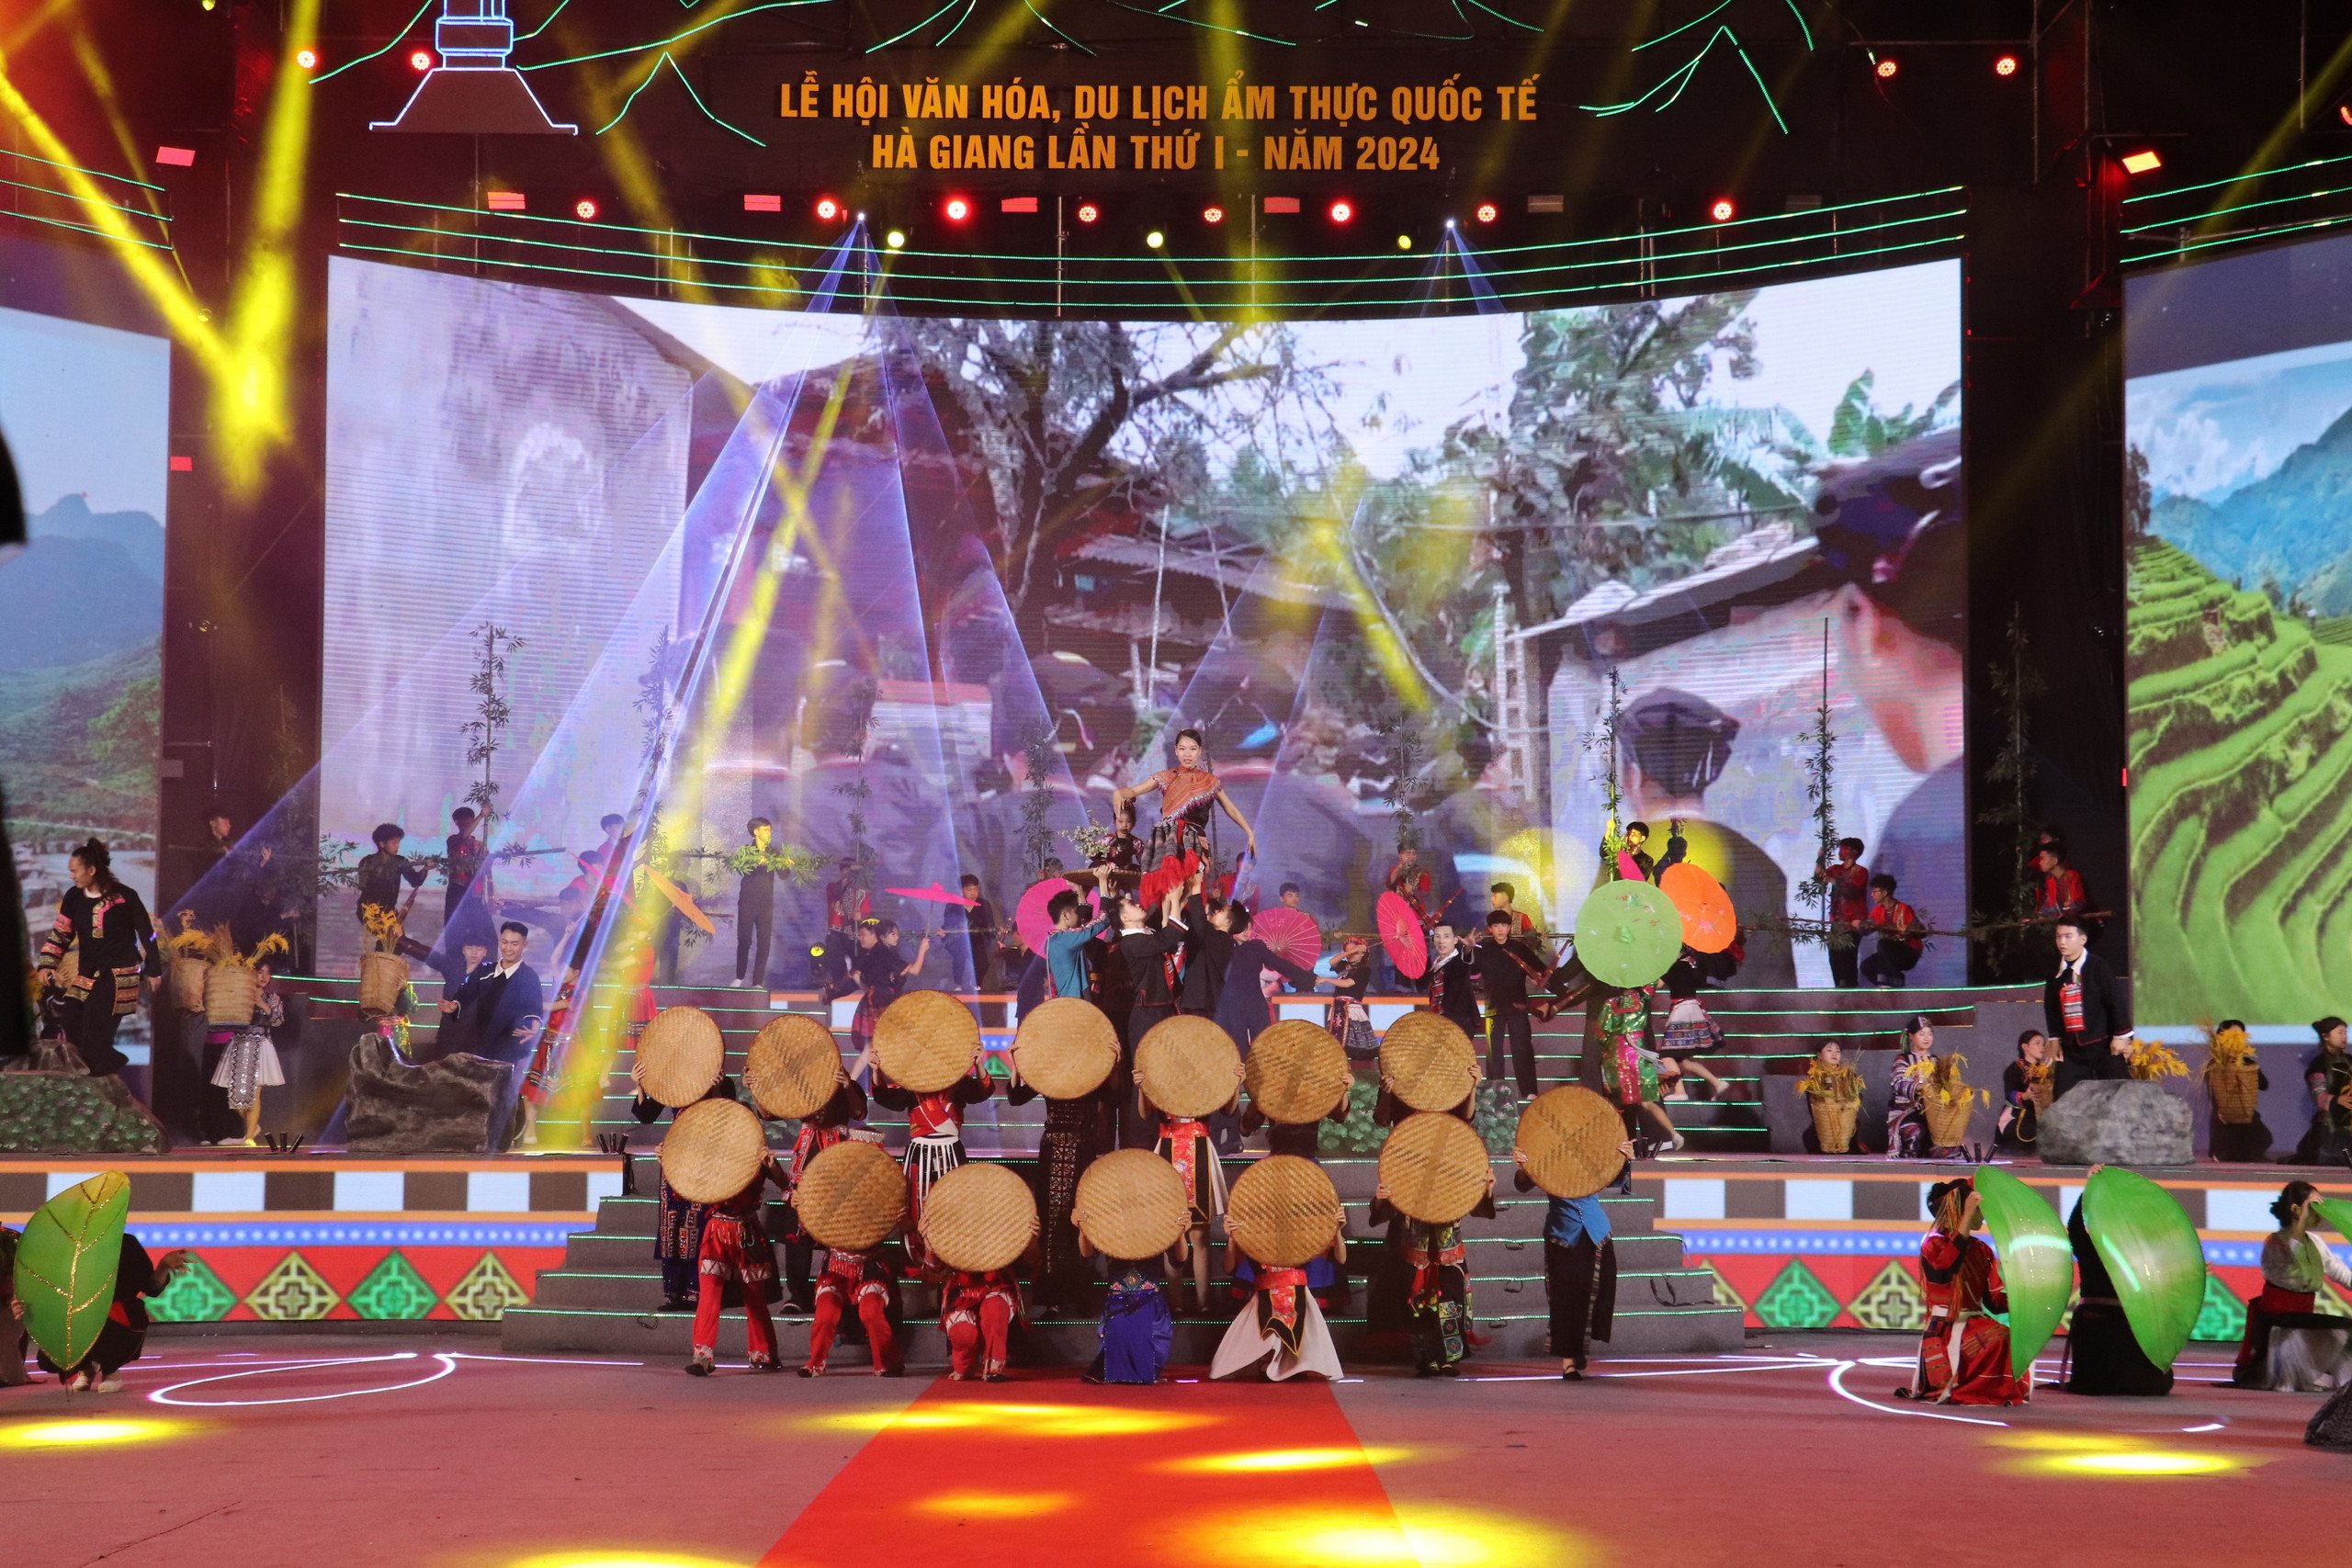 Lễ hội Văn hóa, du lịch và ẩm thực quốc tế lần đầu tiên được tổ chức tại Hà Giang